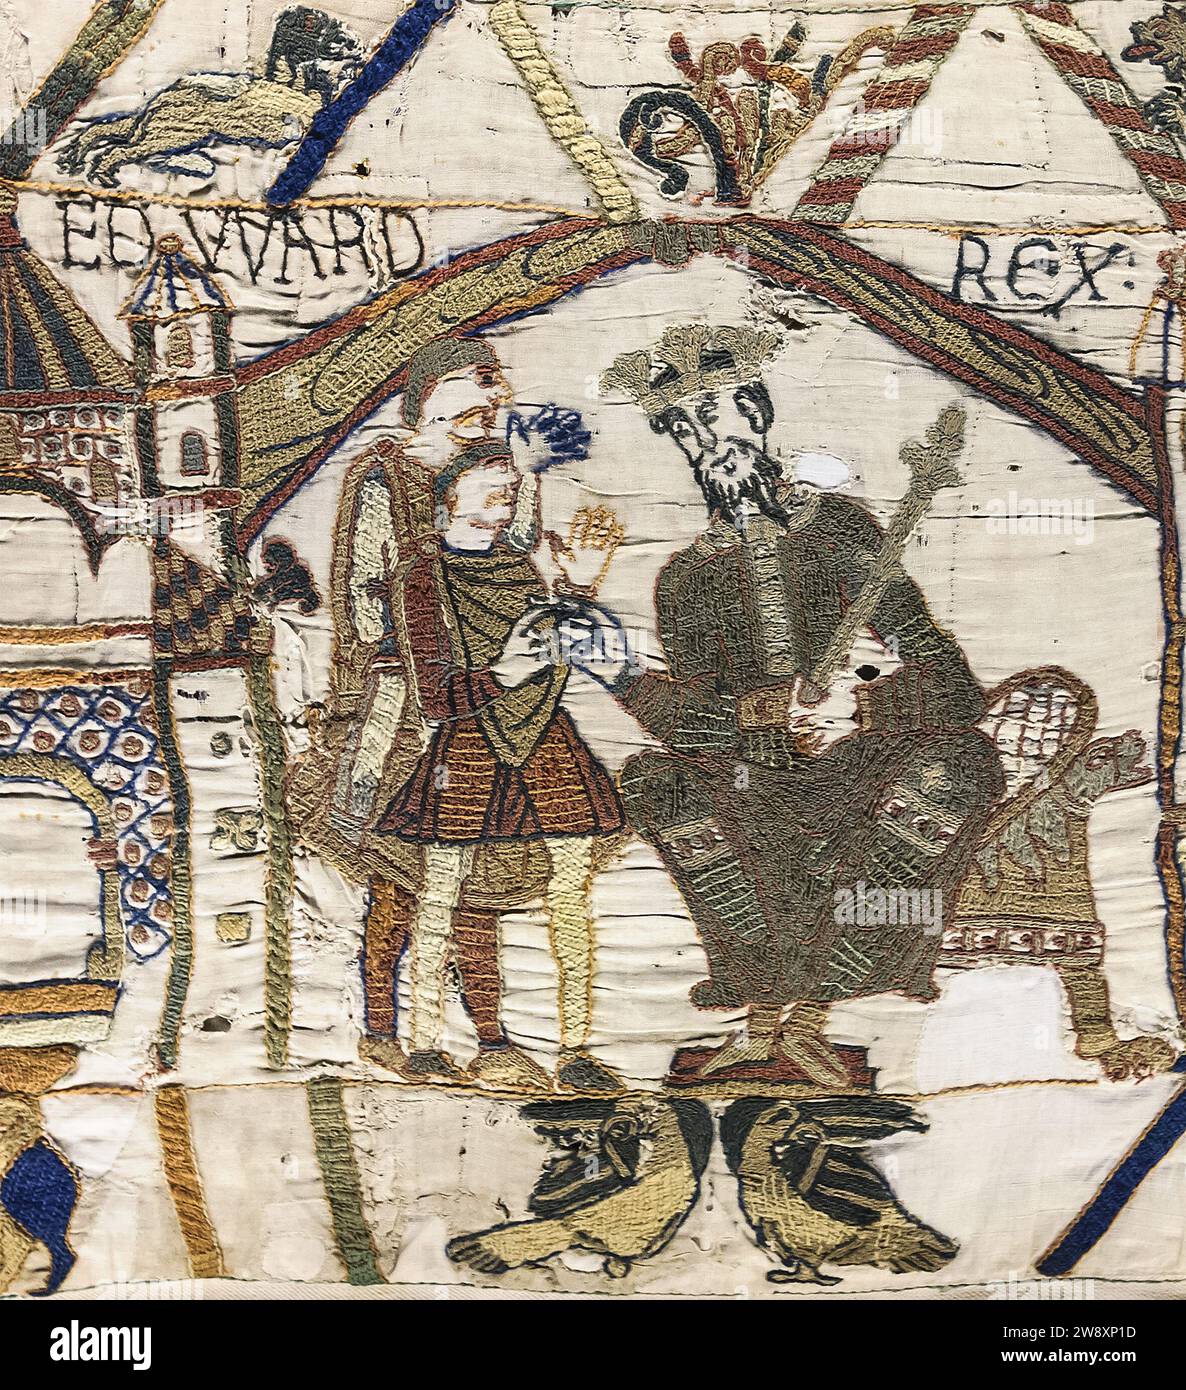 Edward der Bekenner, thront in der Eröffnungsszene des Bayeux Tapestry mit Harold Godwinson. Illustration des angelsächsischen englischen Königs und heiligen Eduard des Bekenners (um 1003–1066). Er war der letzte König des Hauses Wessex. Stockfoto